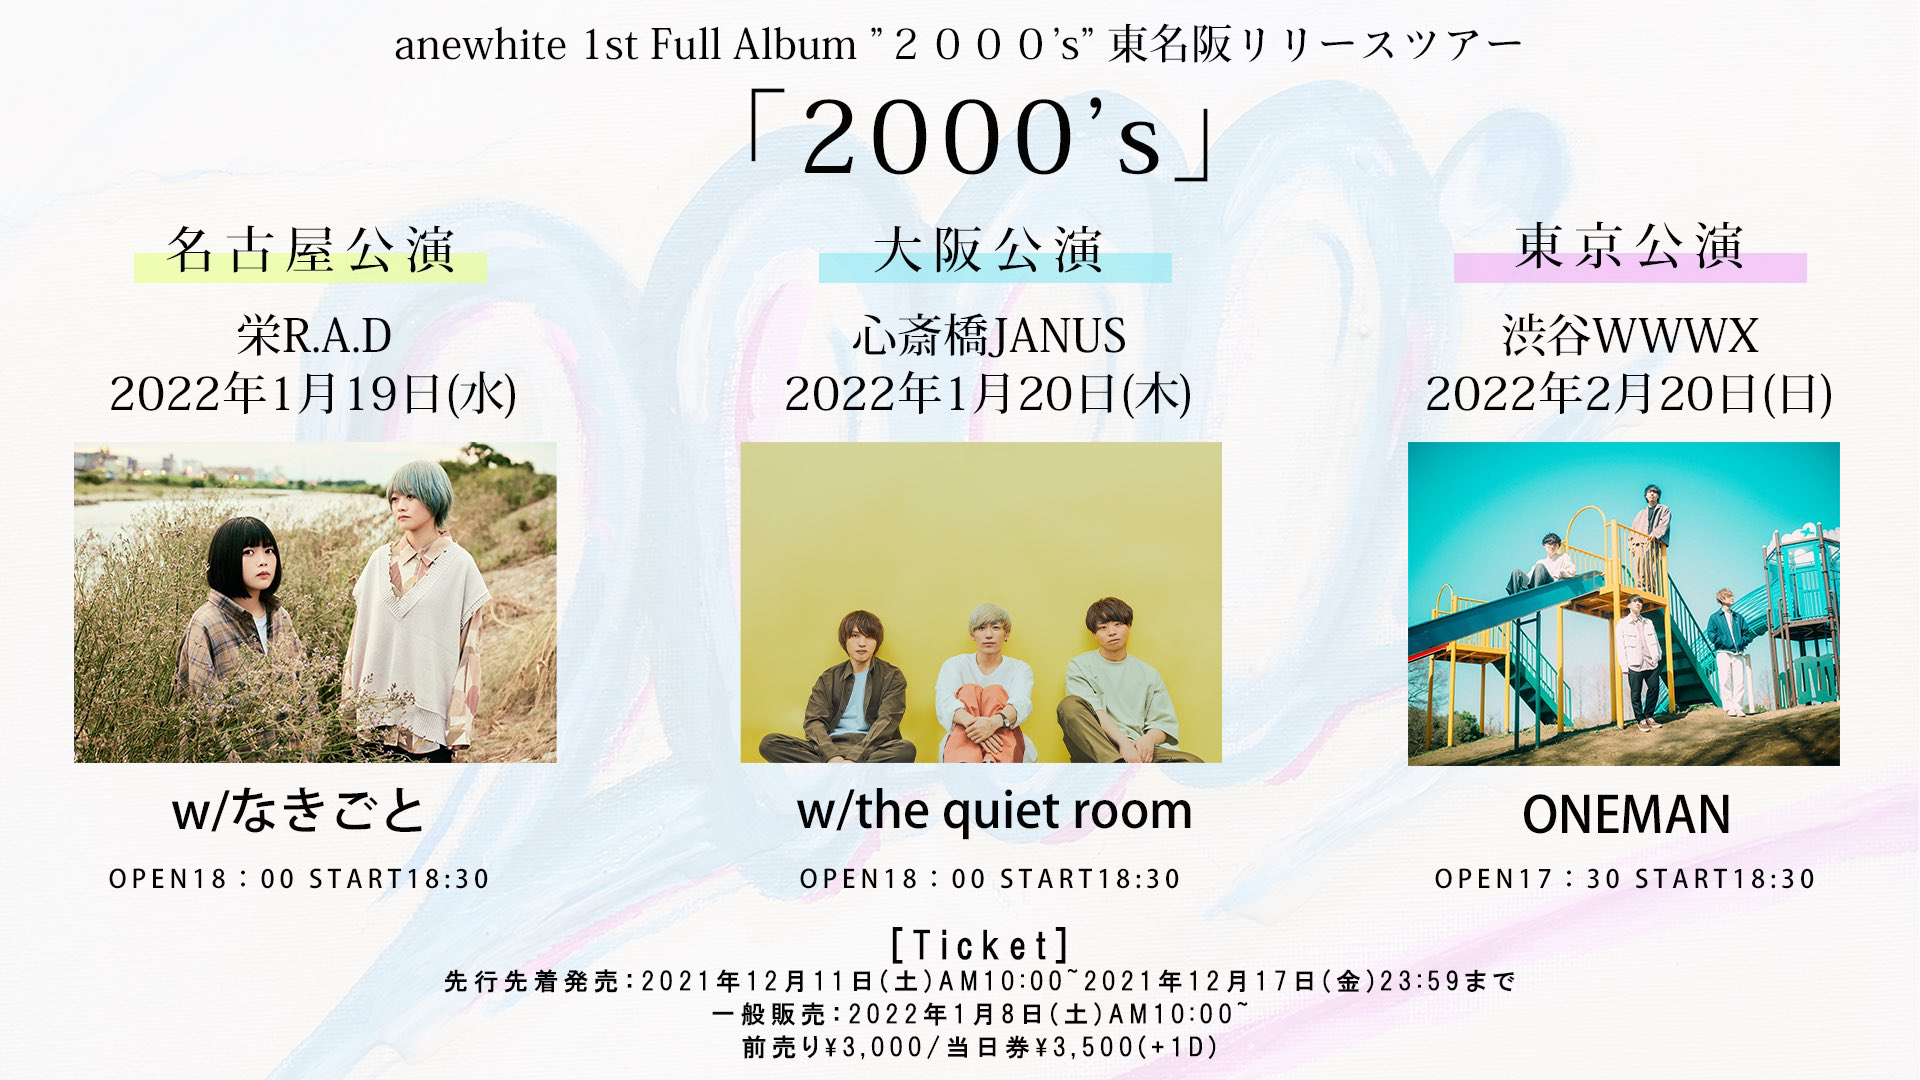 anewhite 1st Full Album "2000's" 東名阪リリースツアー